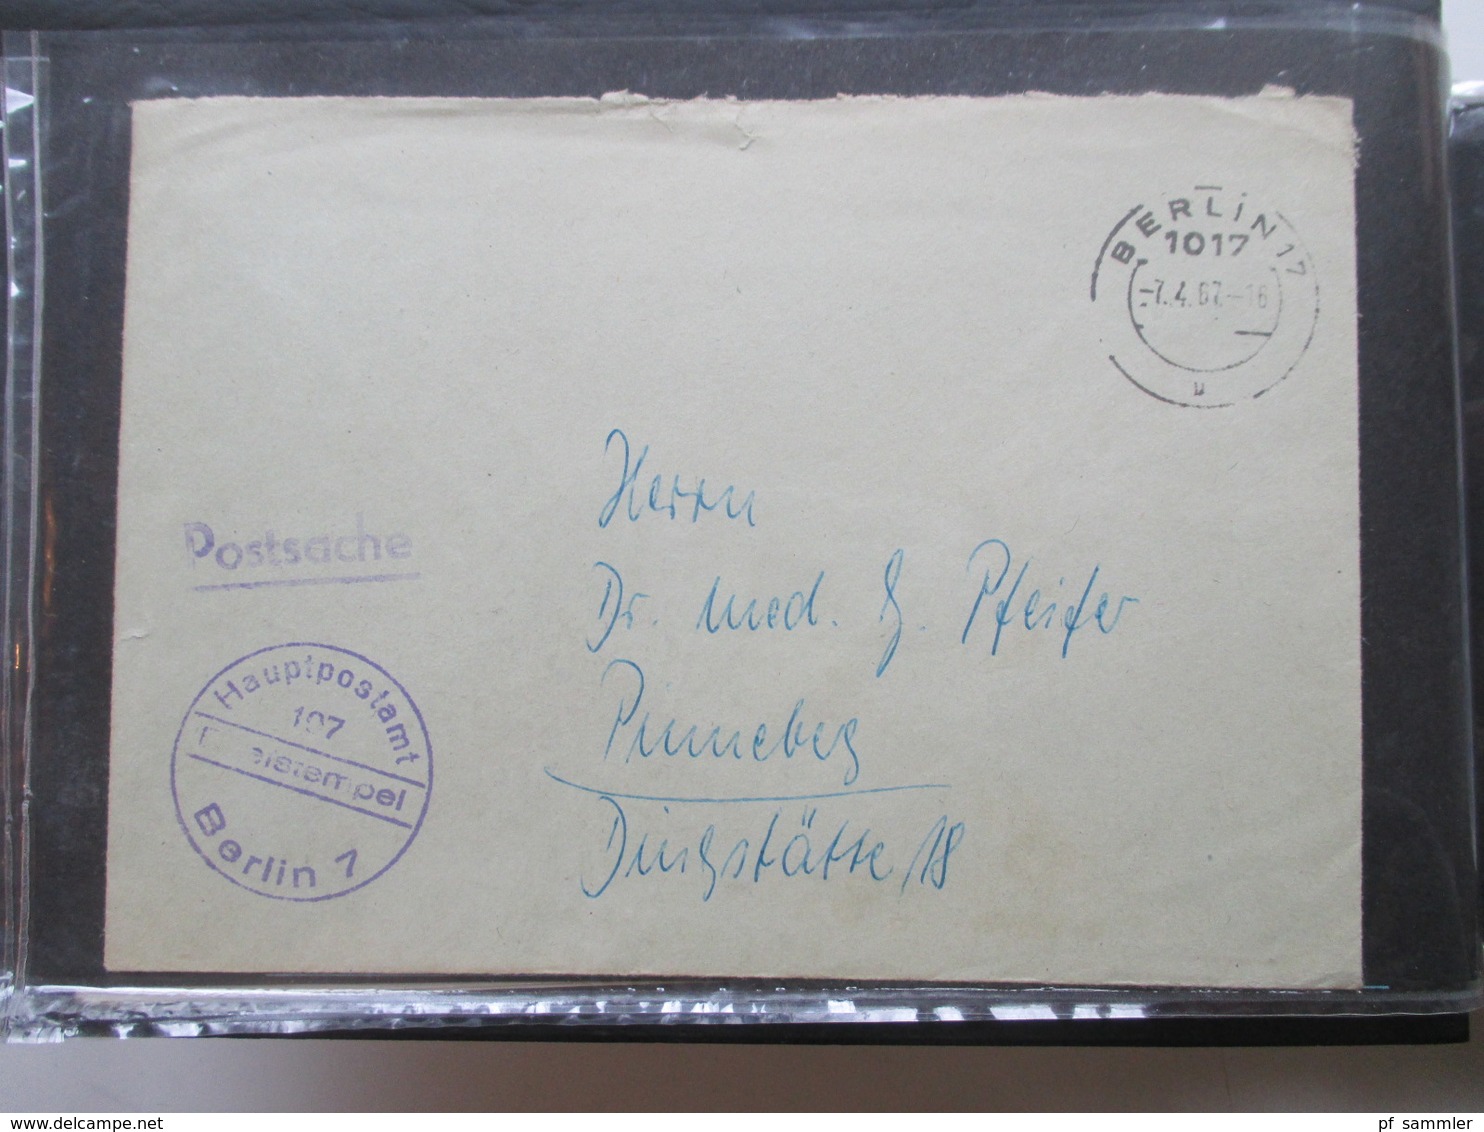 Berlin Belegealbum 100 Stk. 1949 - 90 einige Einschreiben und auch Luftpost Bedarf und Sammlerbelege. Stöberposten!